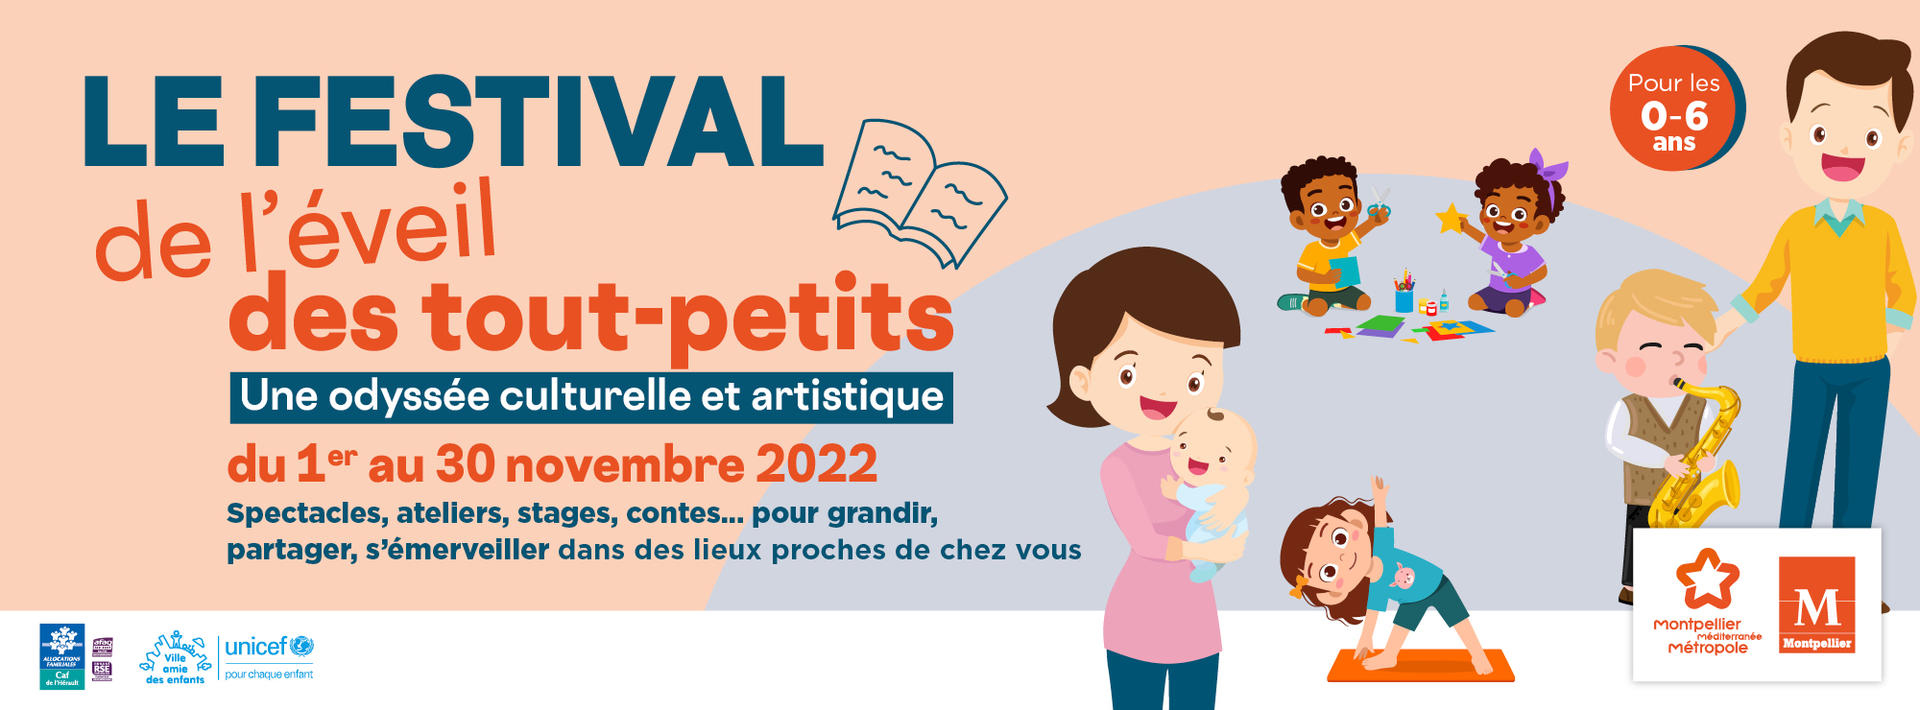 Communiqué de presse : Le festival de l’éveil des tout-petits du 1er au 30 novembre à Montpellier